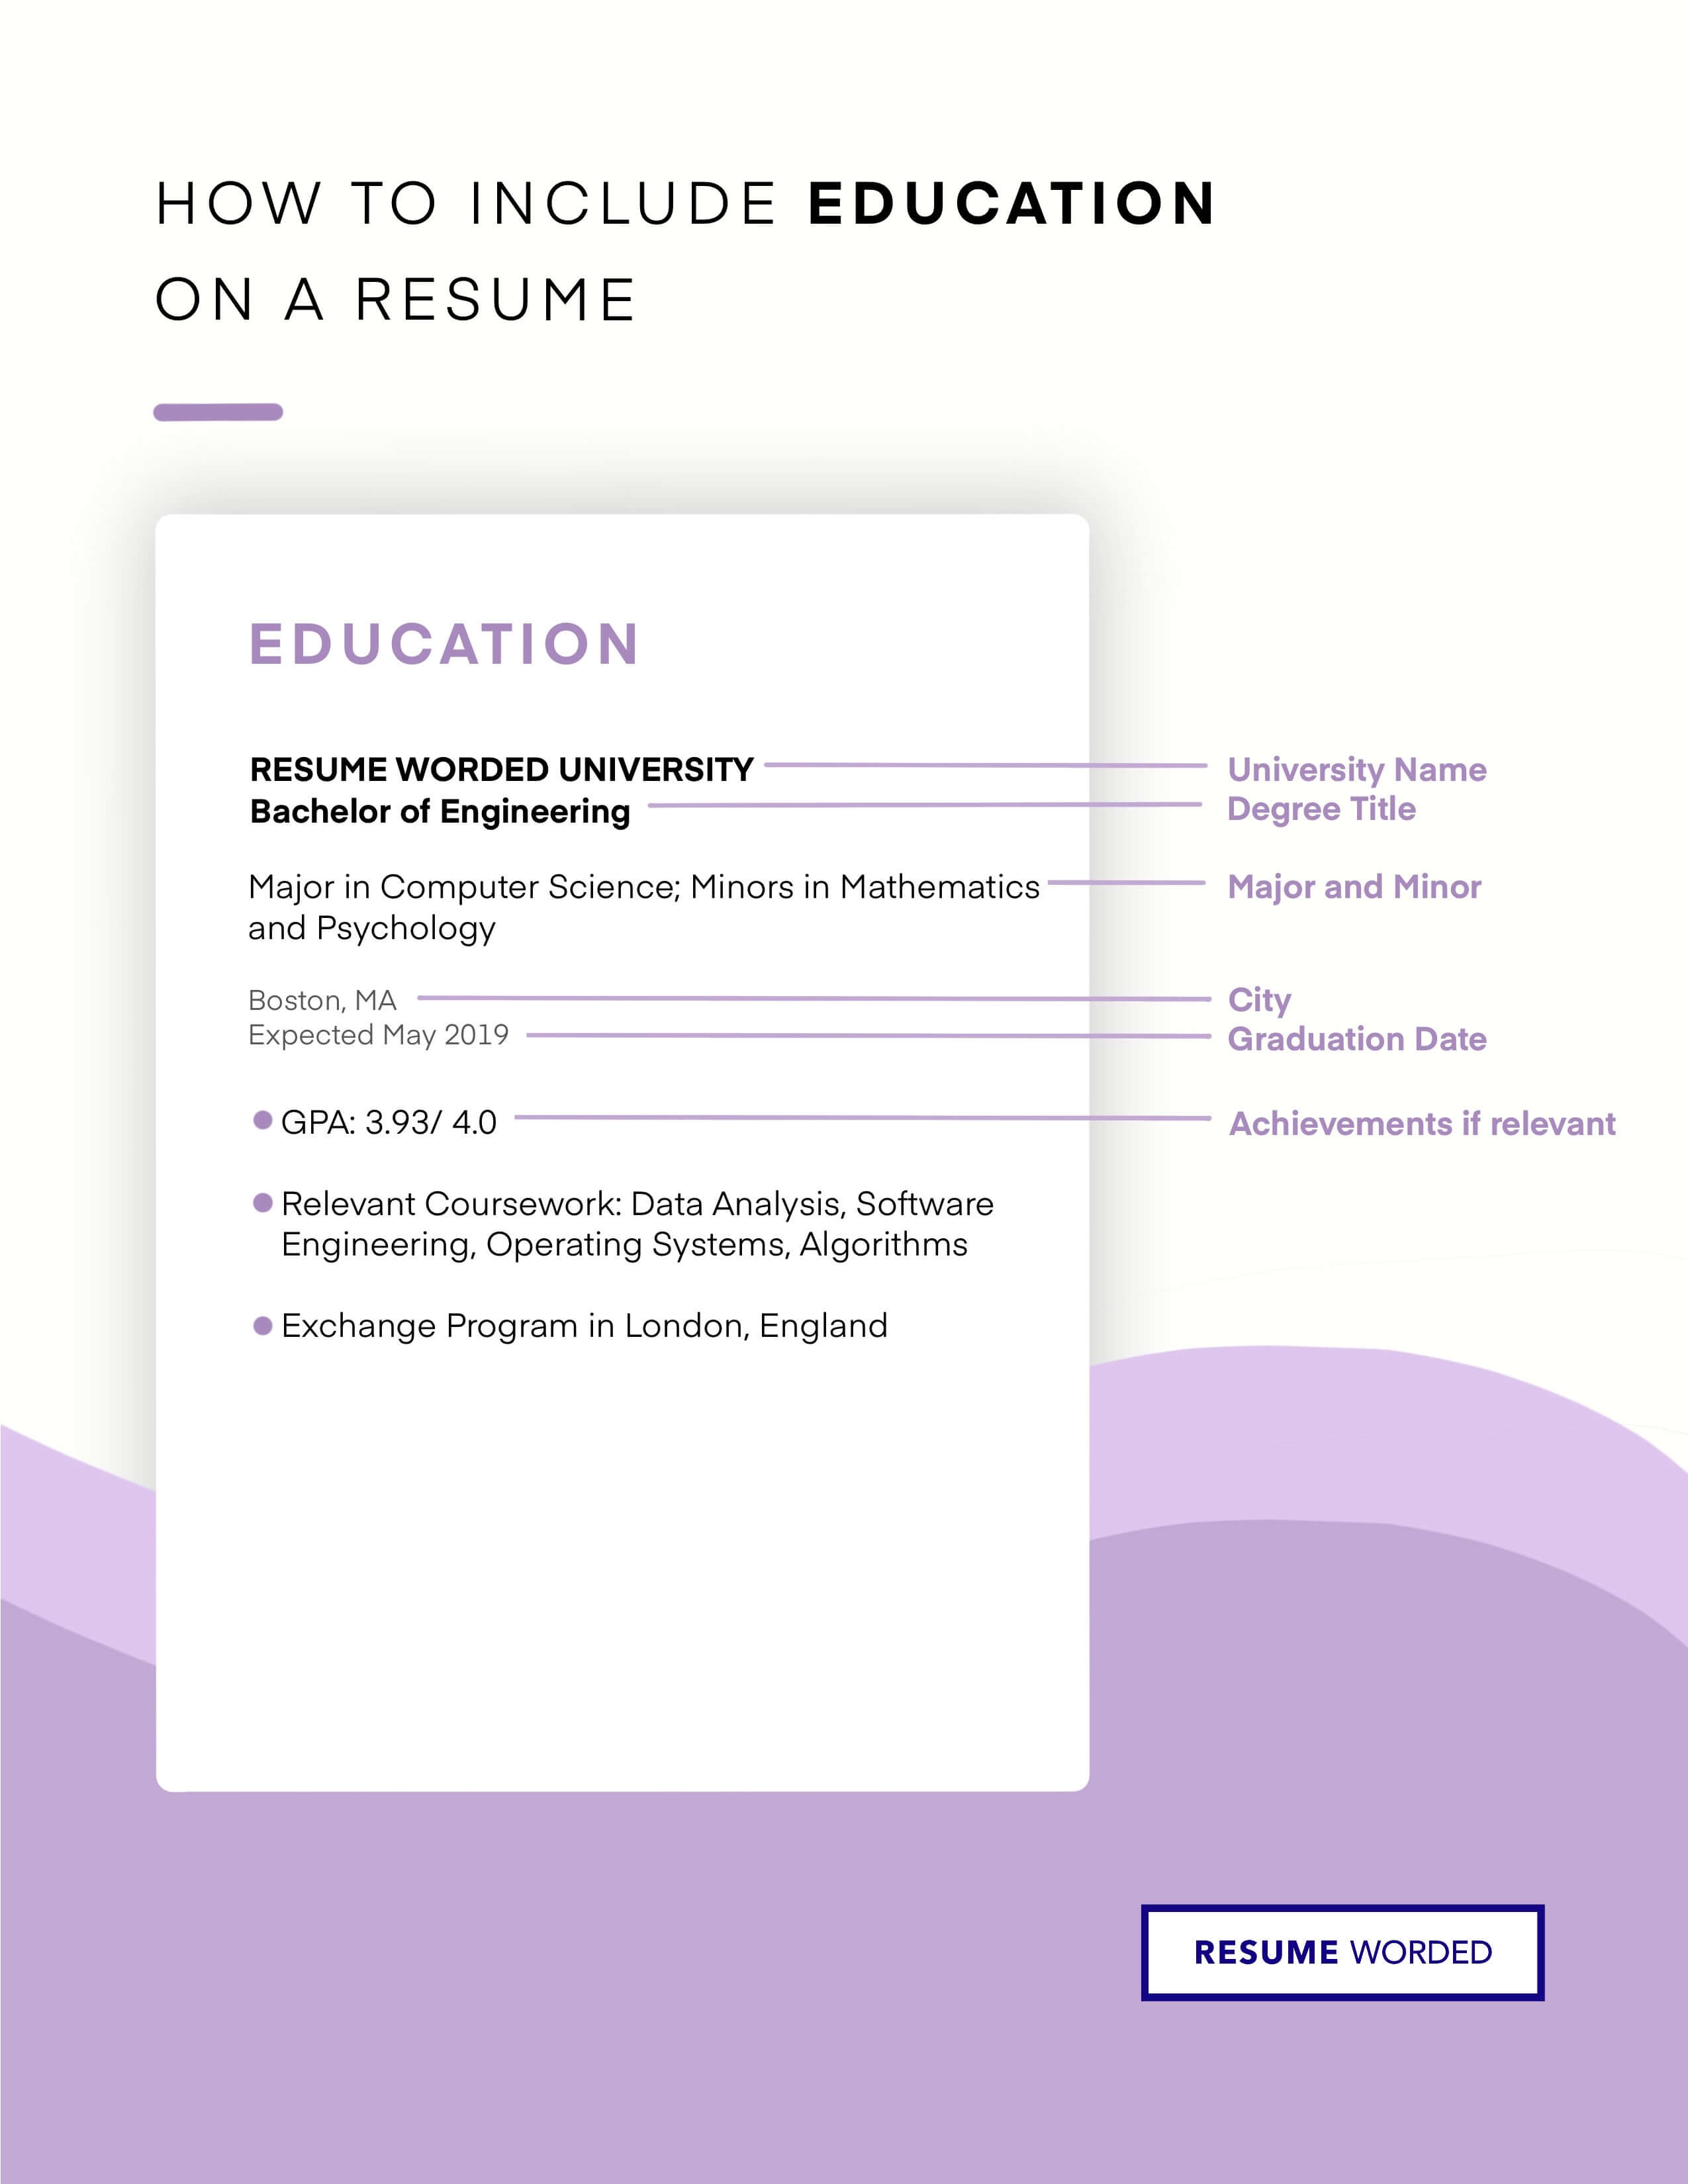 Emphasizes educational history - Entry Level Accountant Resume